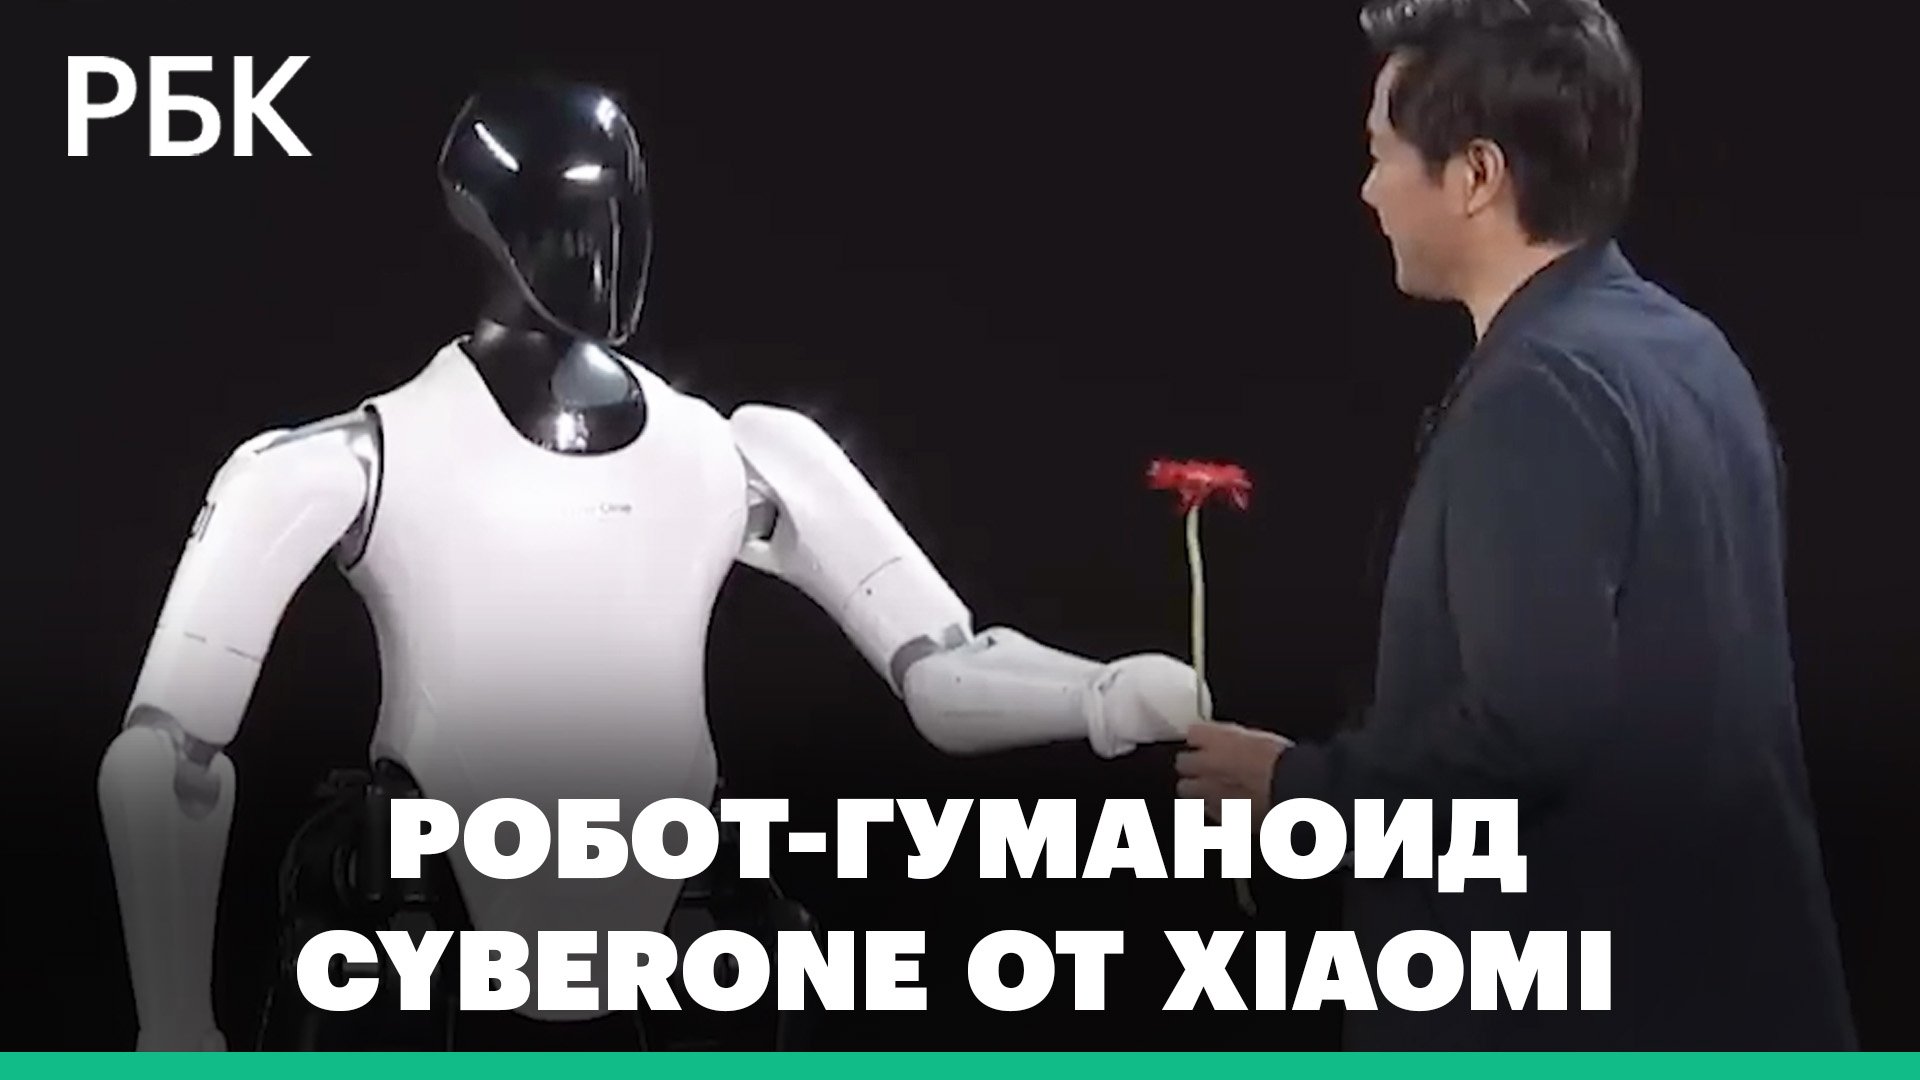 Дарит цветы и делает селфи. Xiaomi представила своего первого человекоподобного робота CyberOne